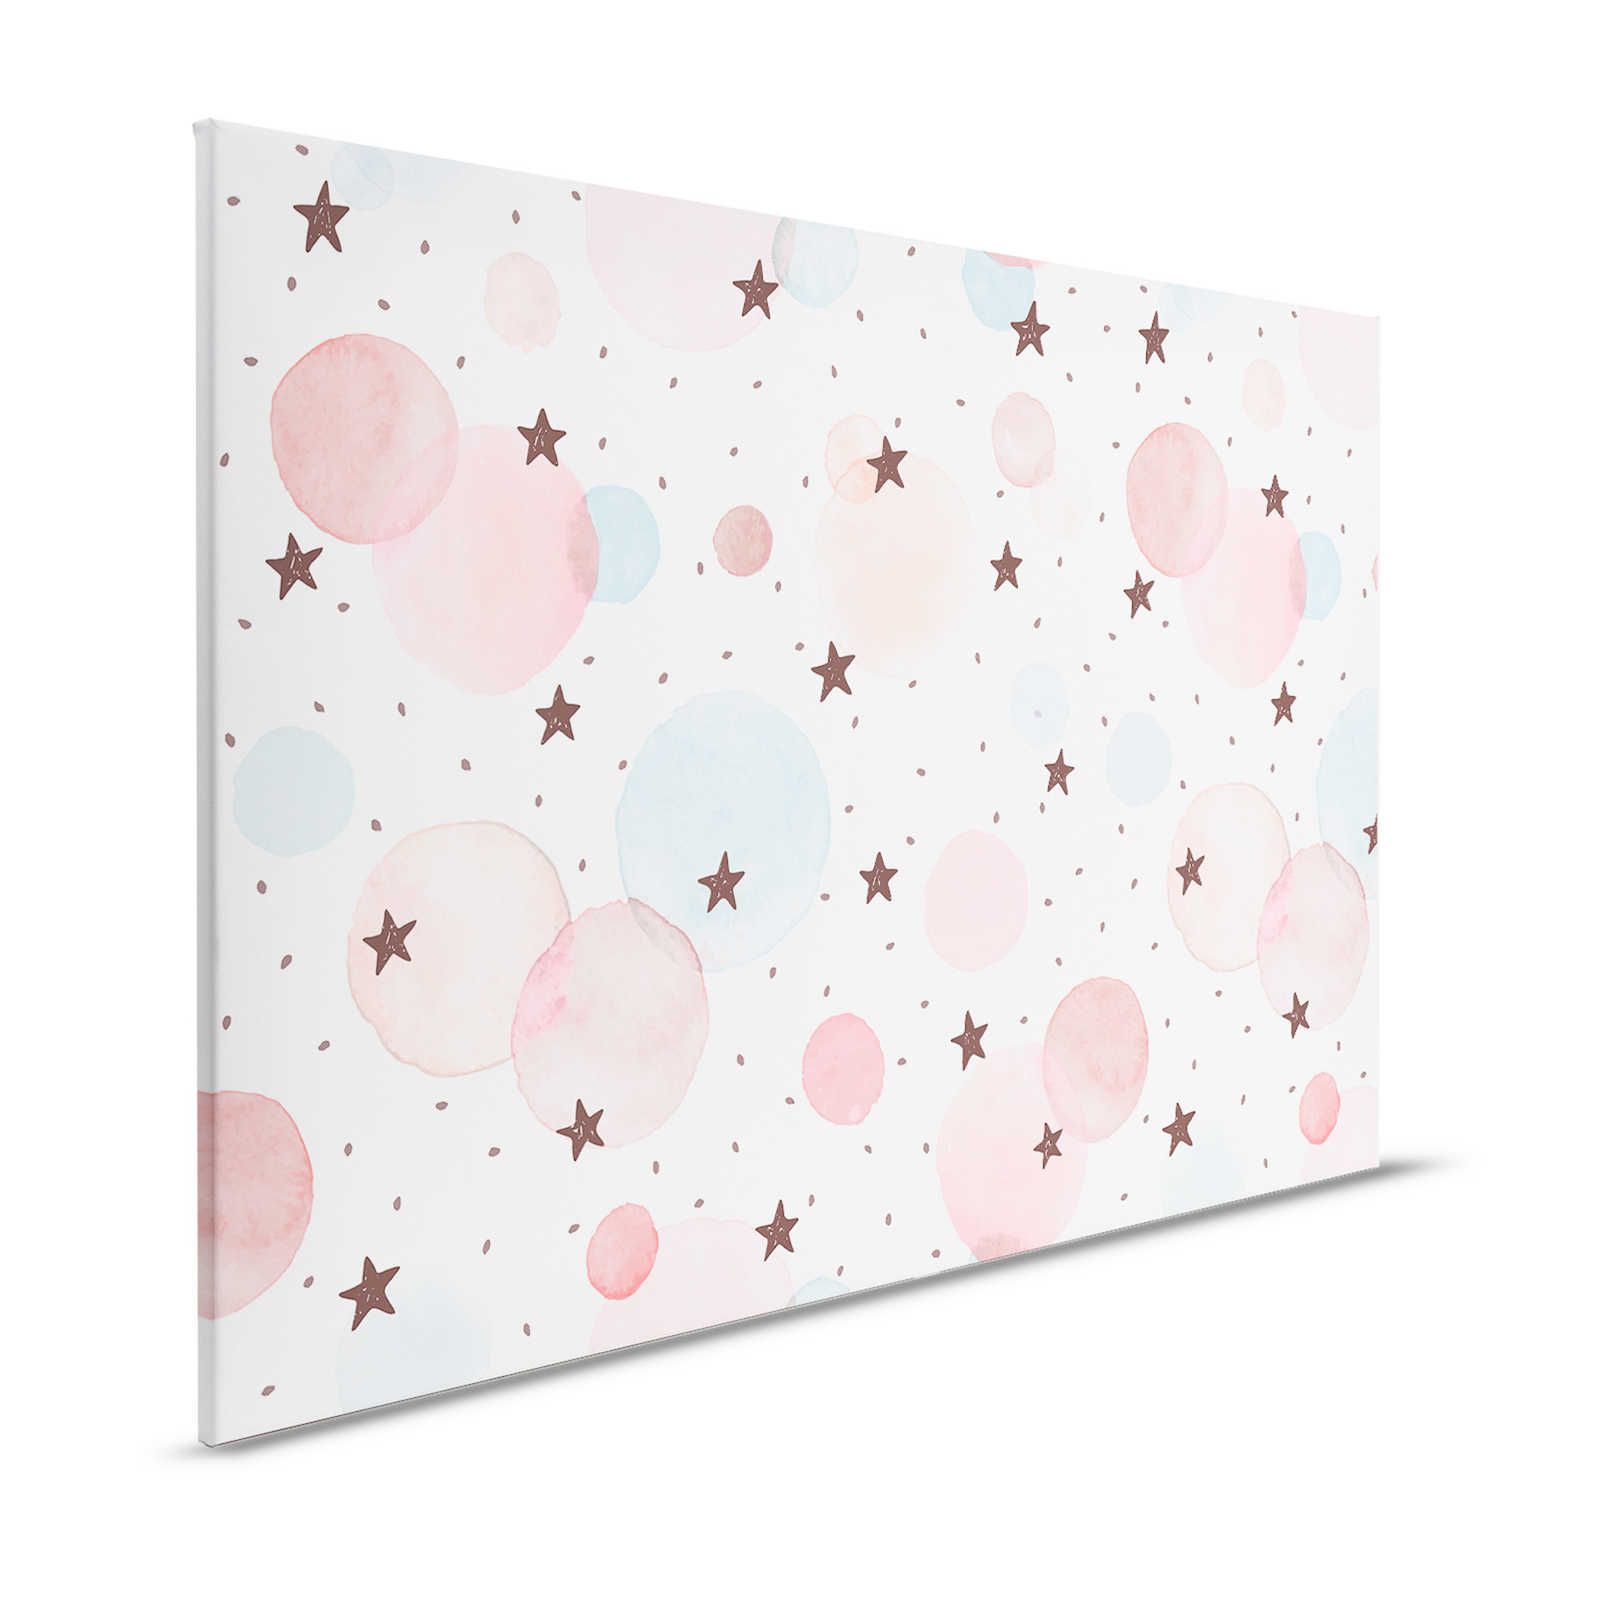 Leinwand fürs Kinderzimmer mit Sternen, Punkten und Kreisen – 120 cm x 80 cm
